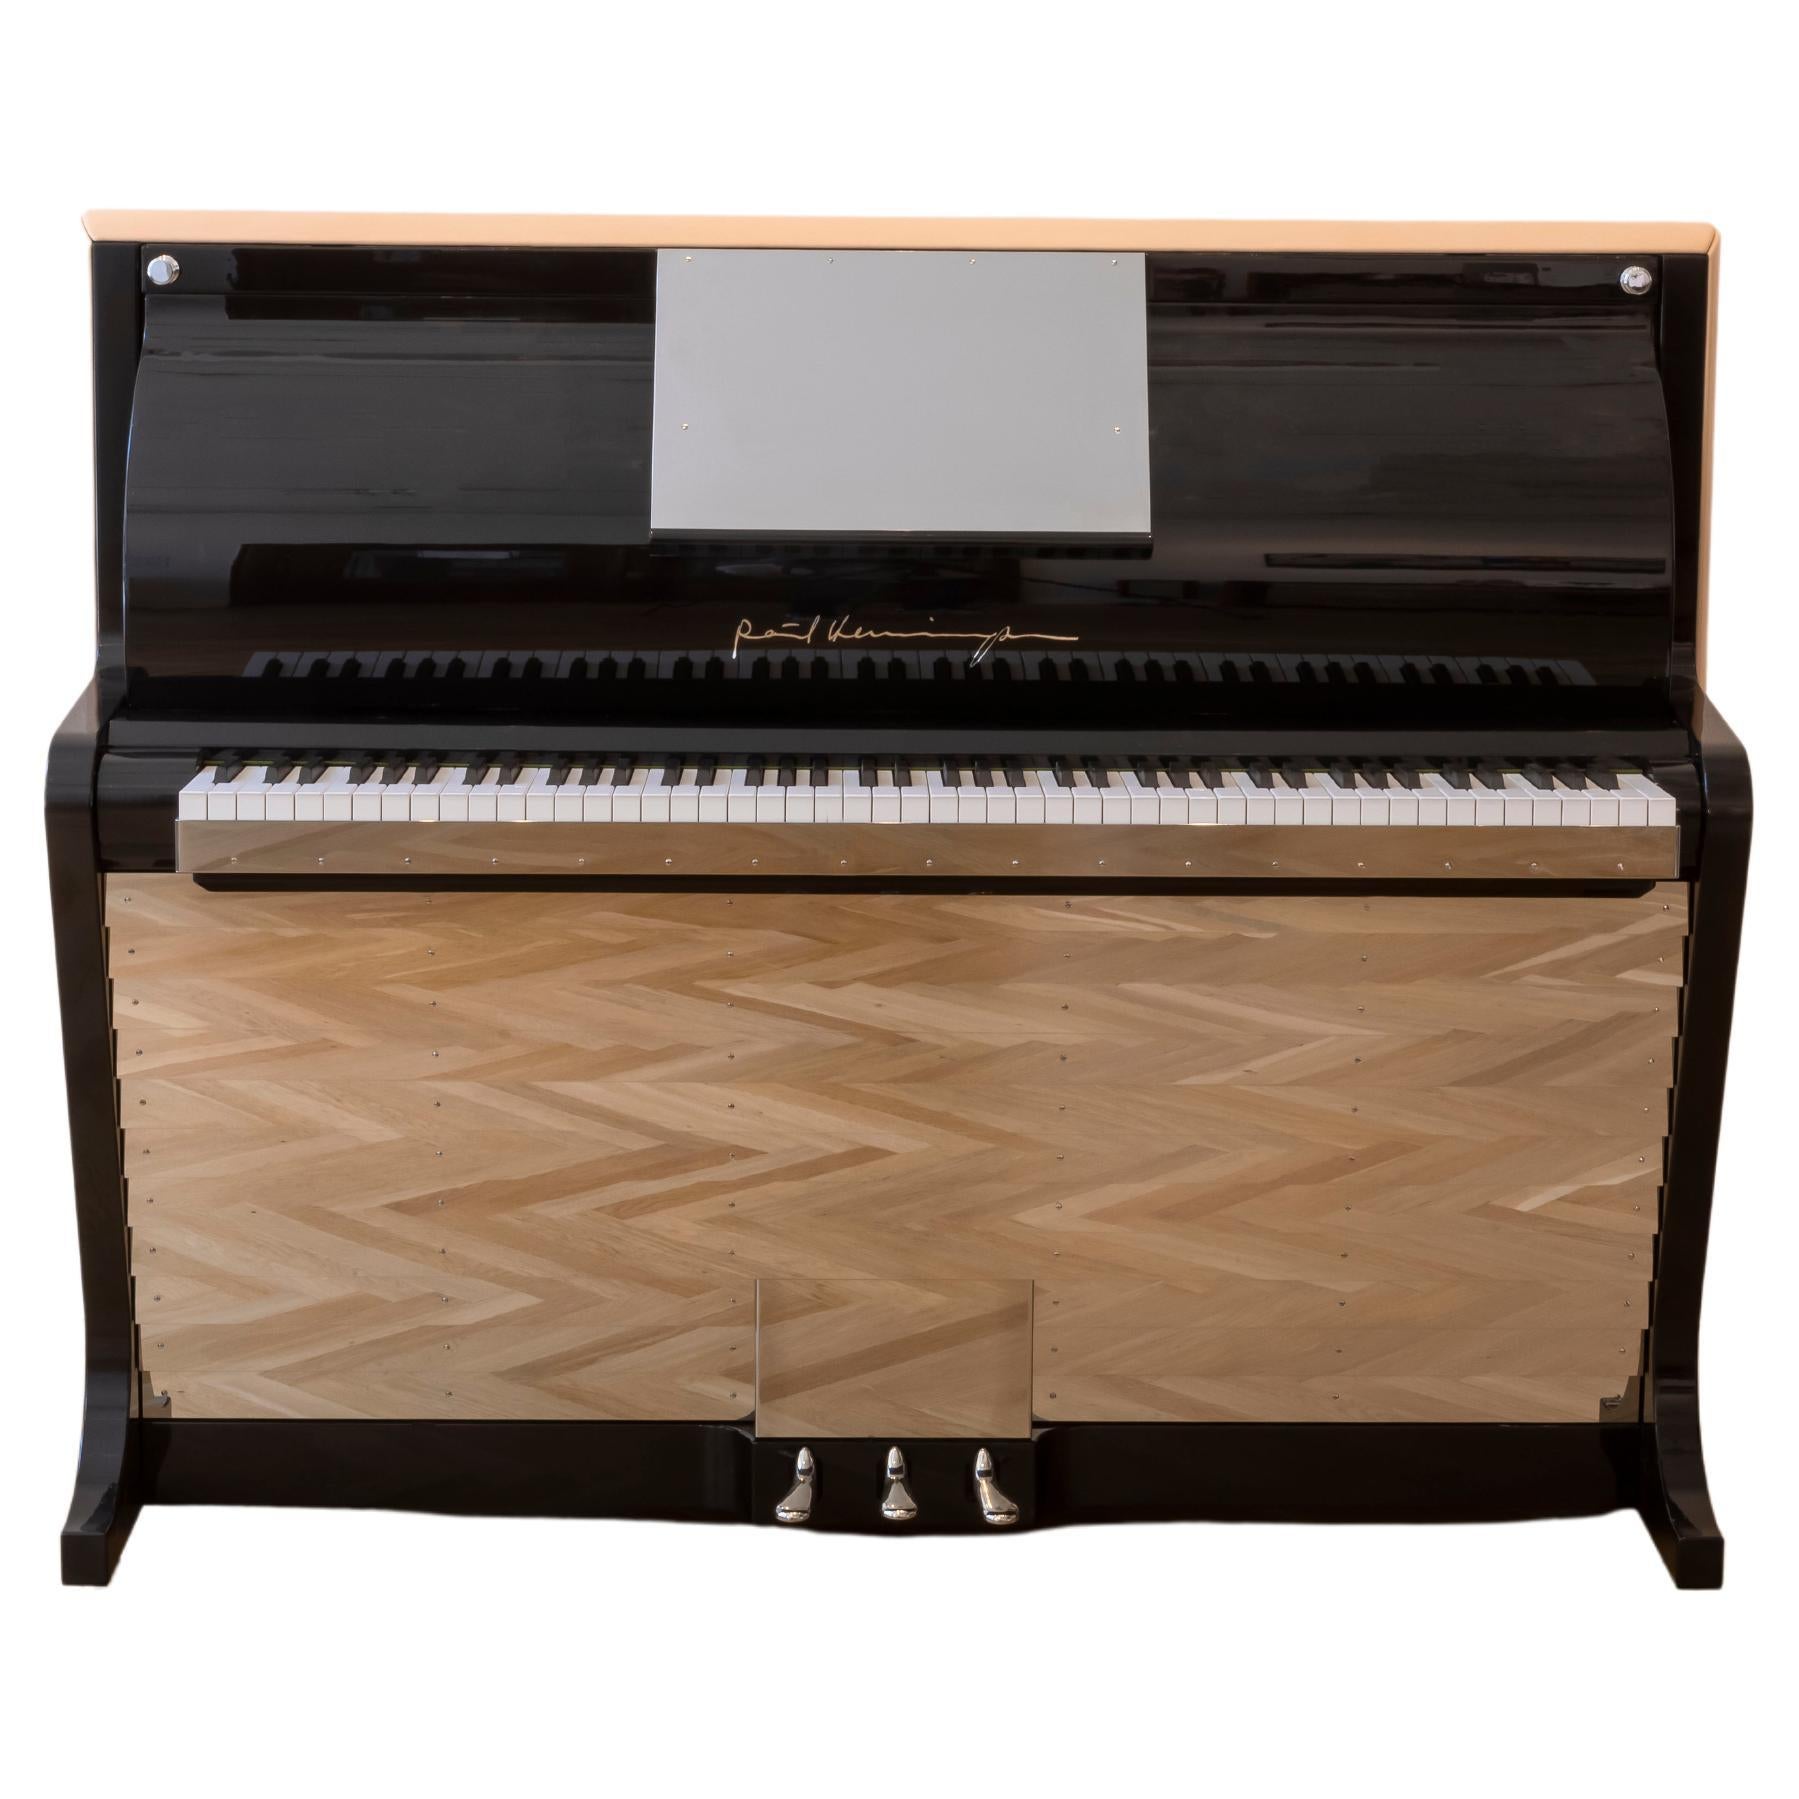 PH Klavier aufrecht, natürliches, unbefärbtes Leder mit verchromten Metallteilen und Holzplatten